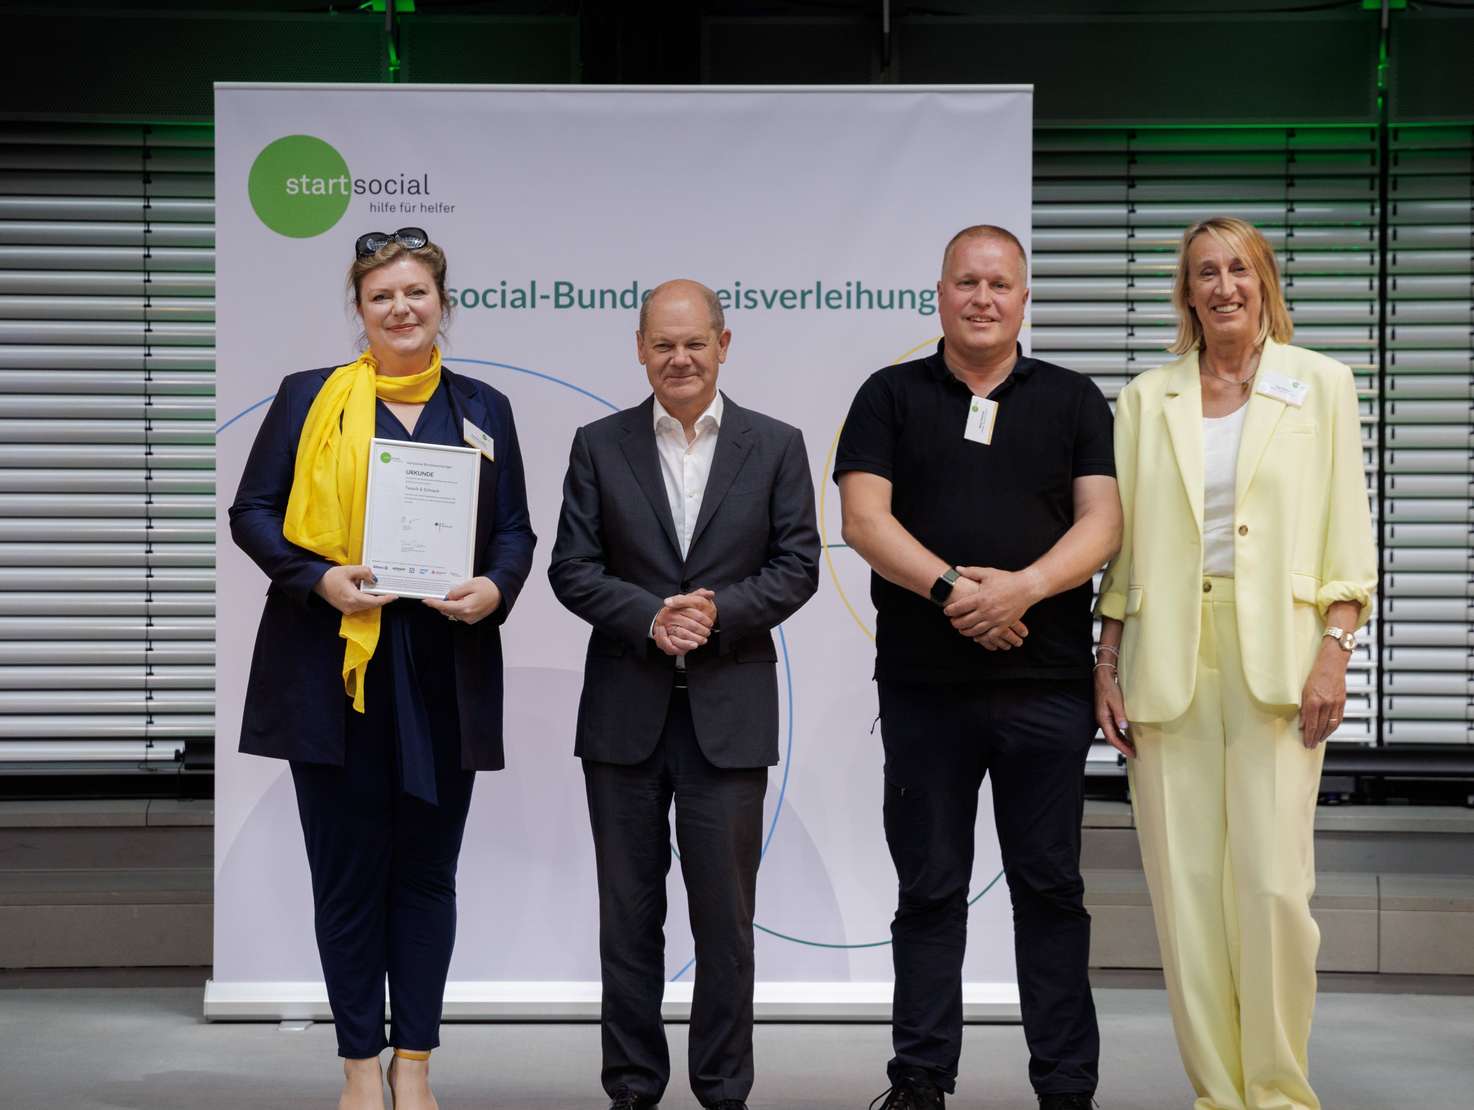 Das Projektteam von ASB Tausch und Schnack Constance Böhle, Rene Grassau und Inga Ruhser (v.l.n.r.) freut sich über die Auszeichnung des Bundeskanzlers Olaf Scholz.